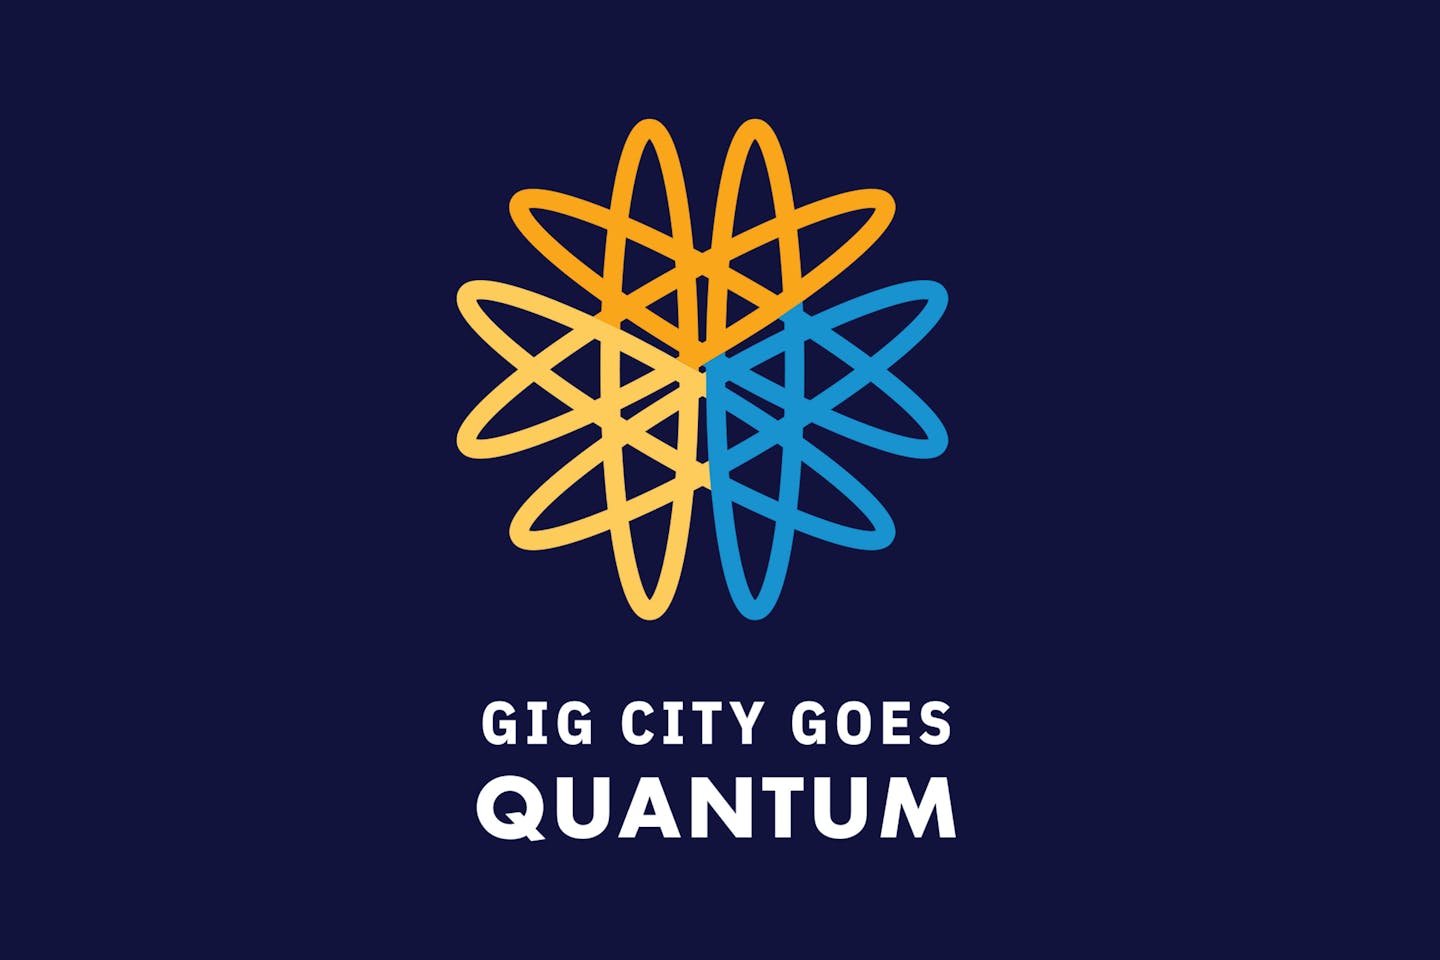 gig city goes quantum